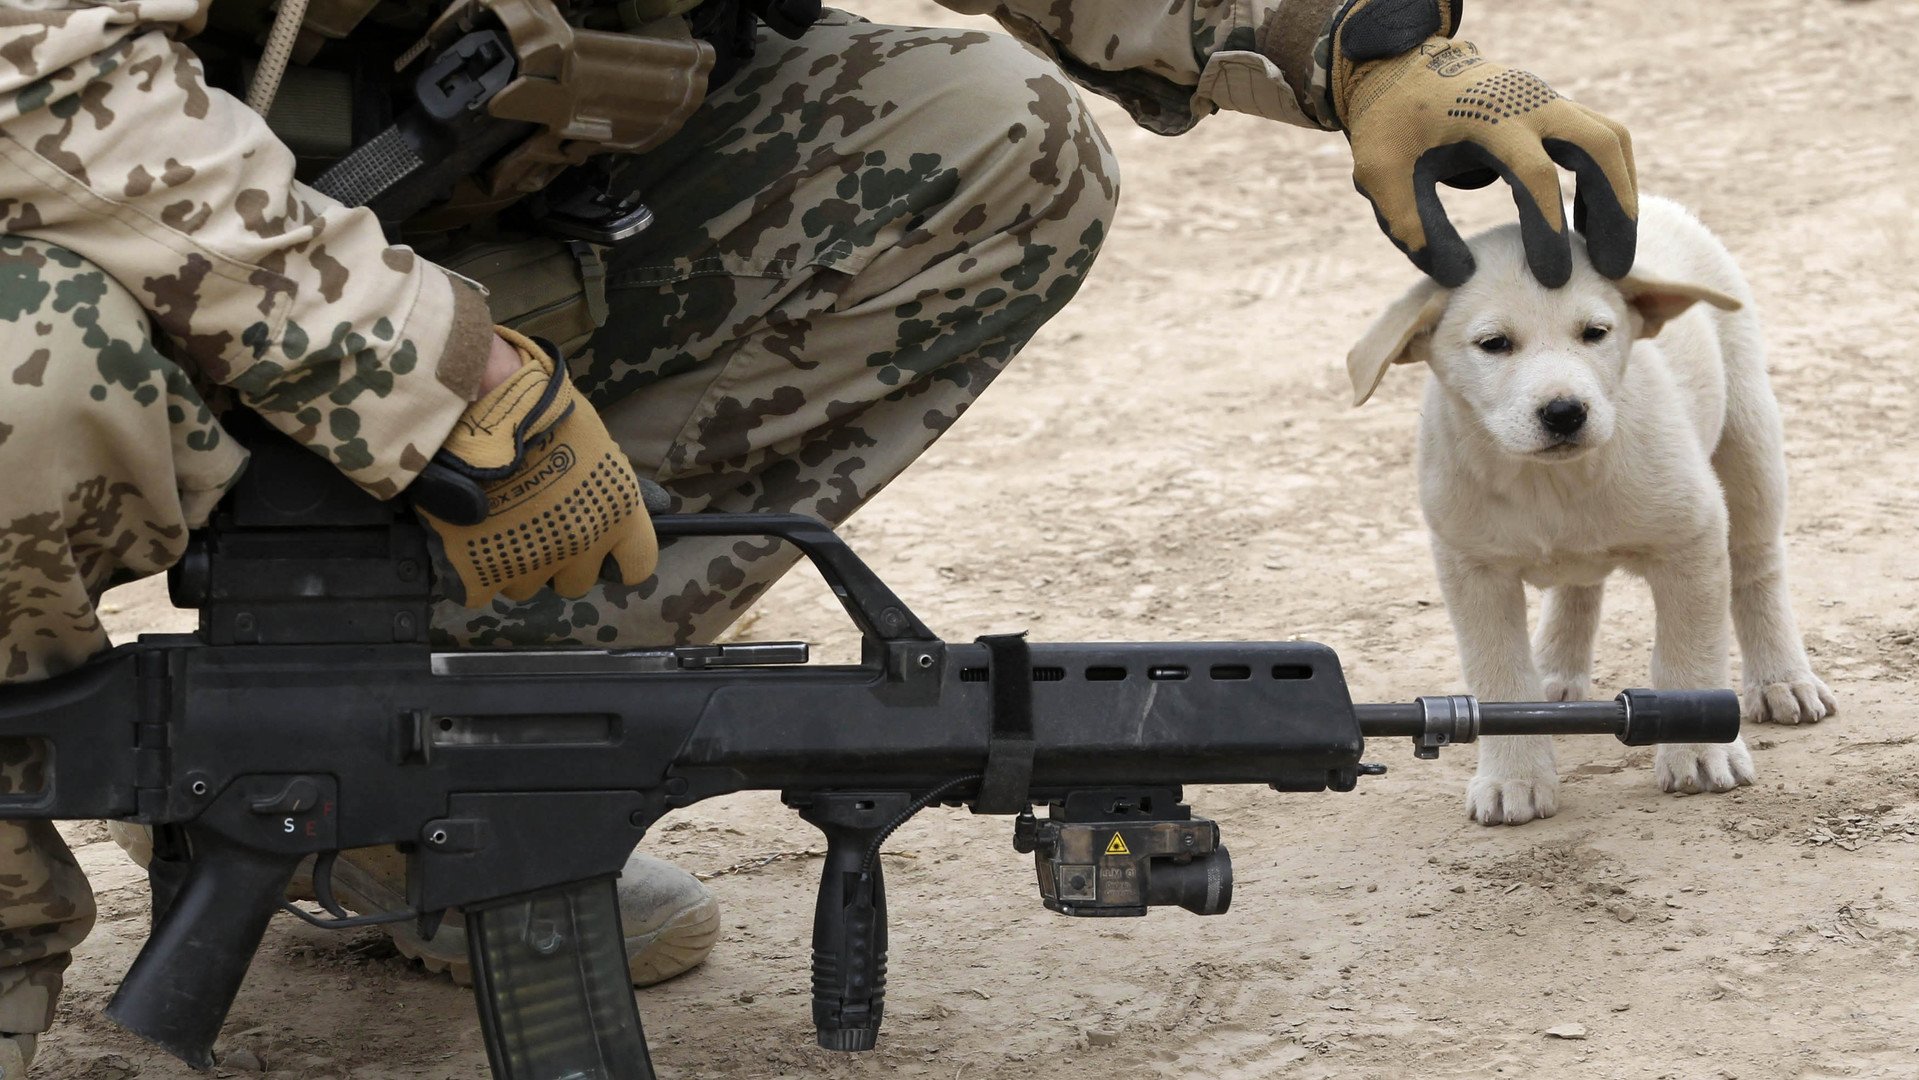 جندي من الجيش الألماني يربت على رأس كلب خلال مهمة بمدينة شمال أفغانستان 6 ديسمبر/كانون الأول 2010 